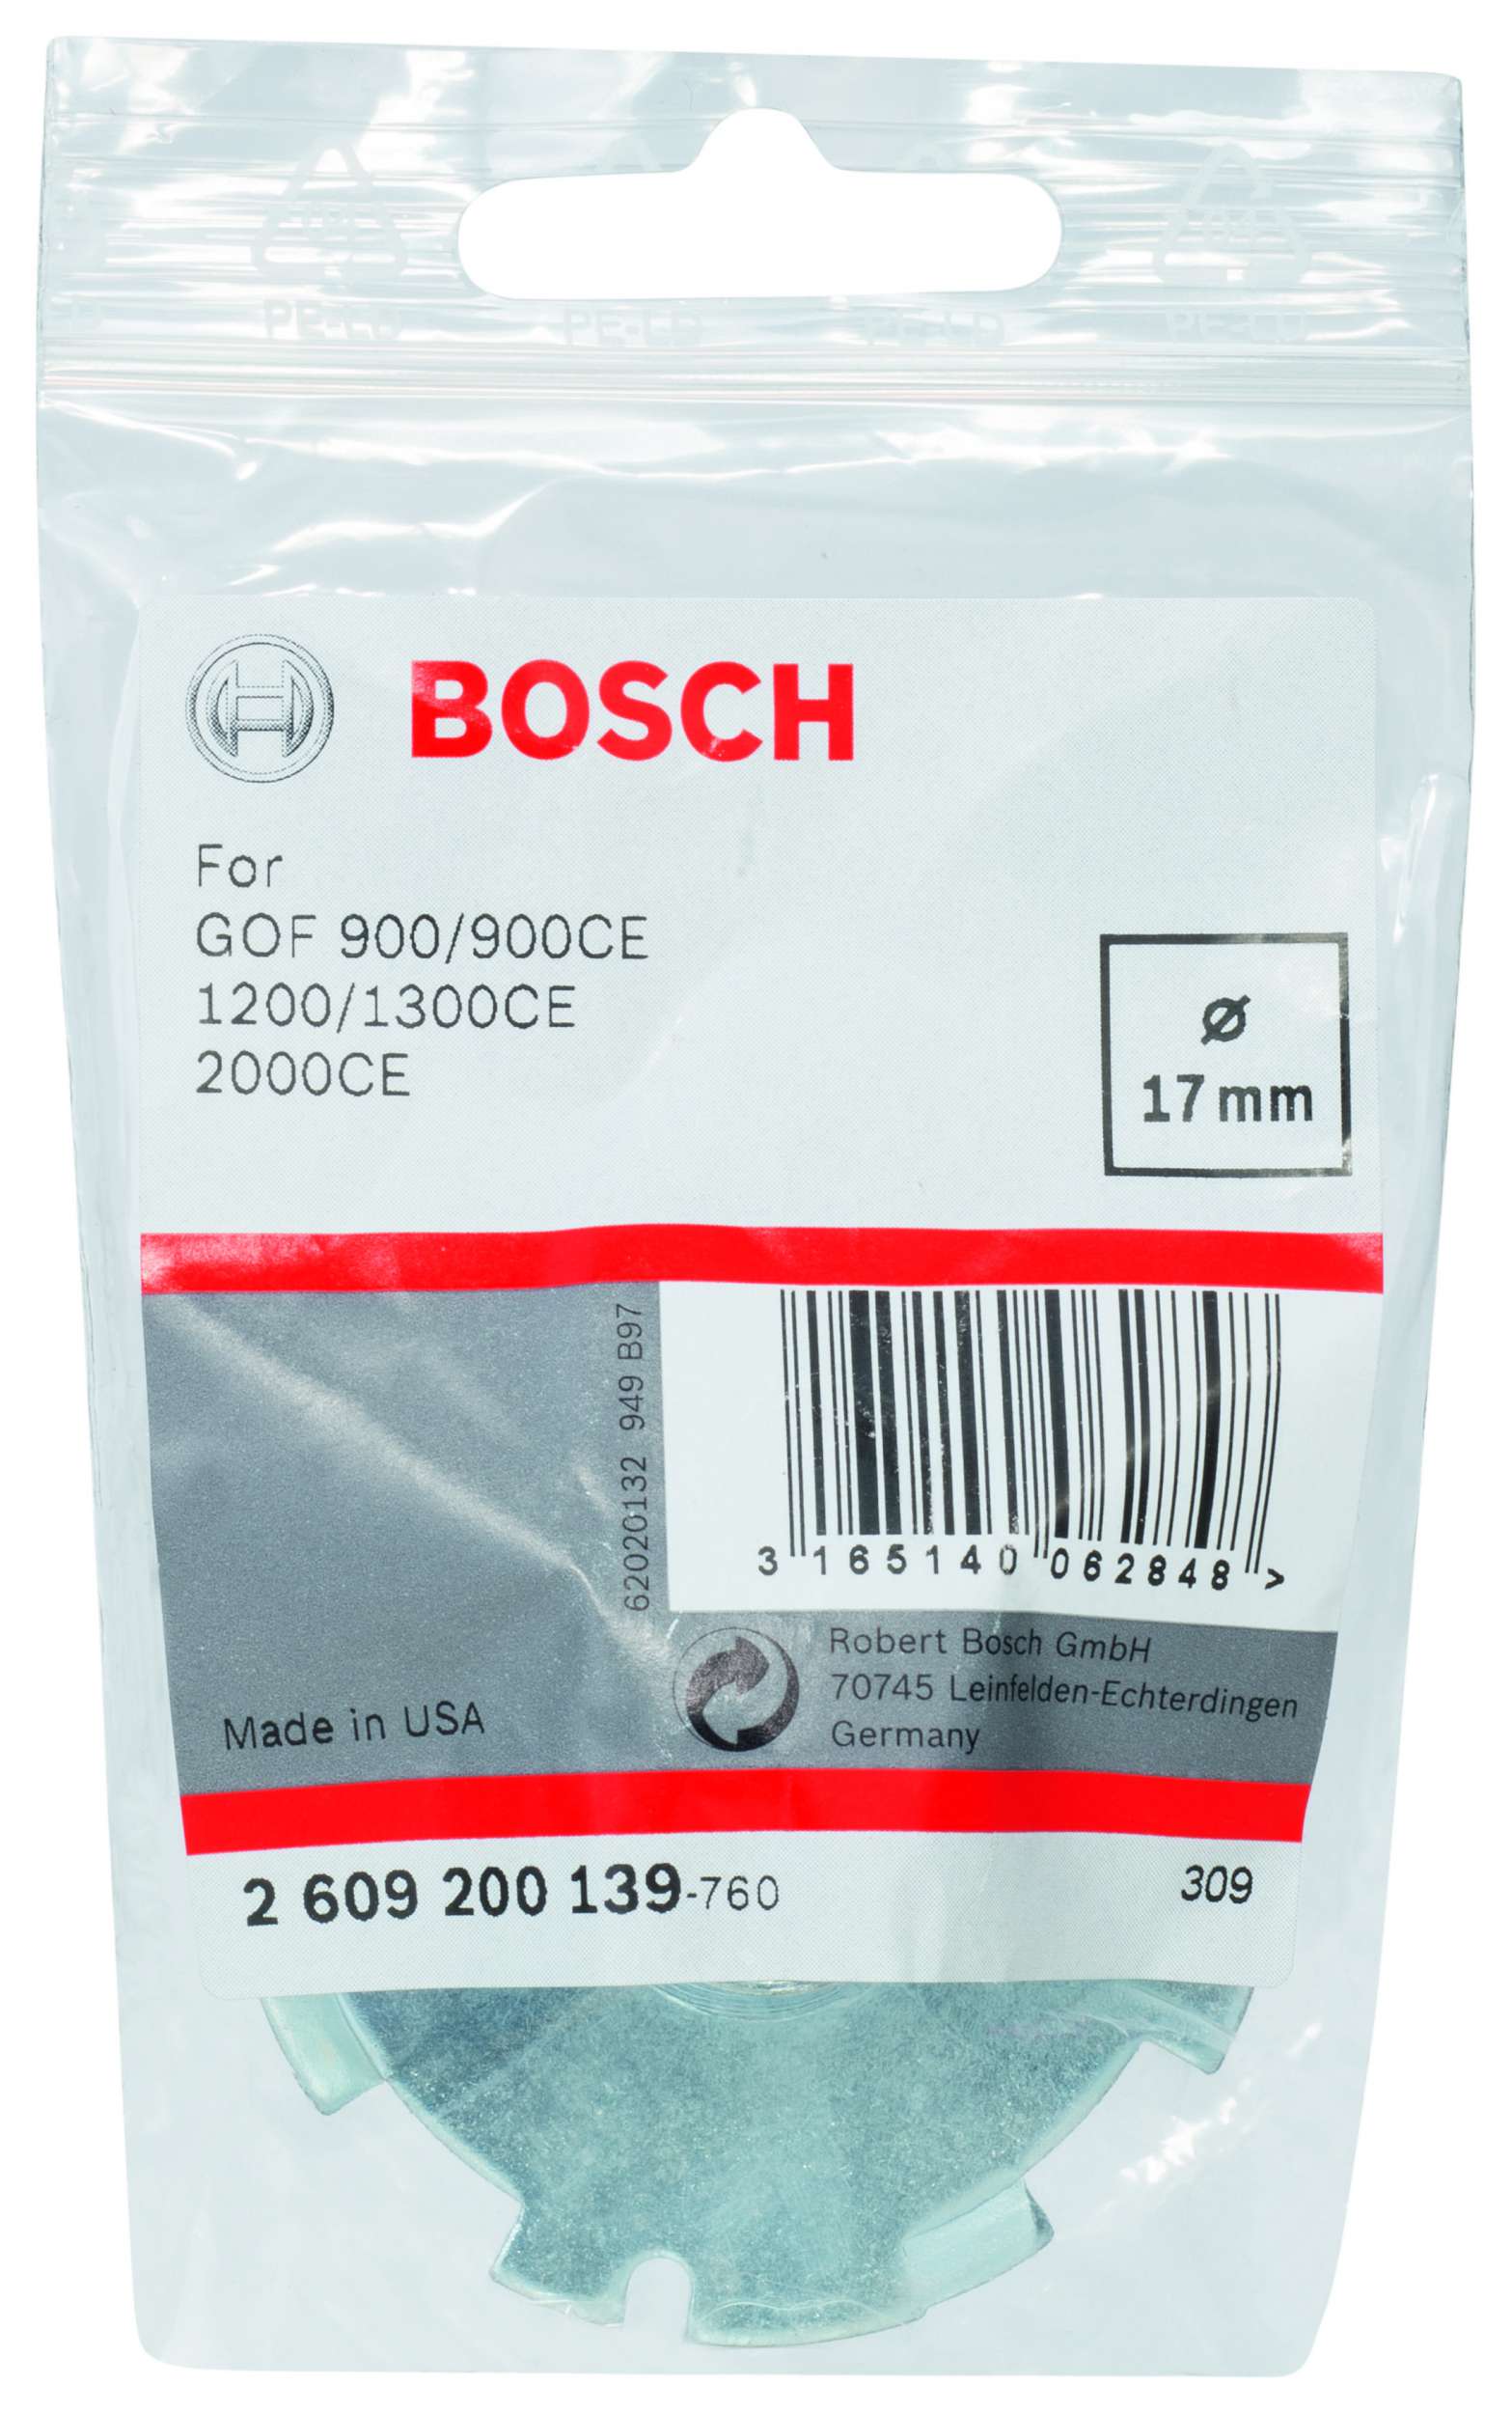 Bosch - Freze Kopyalama Sablonu 17 mm